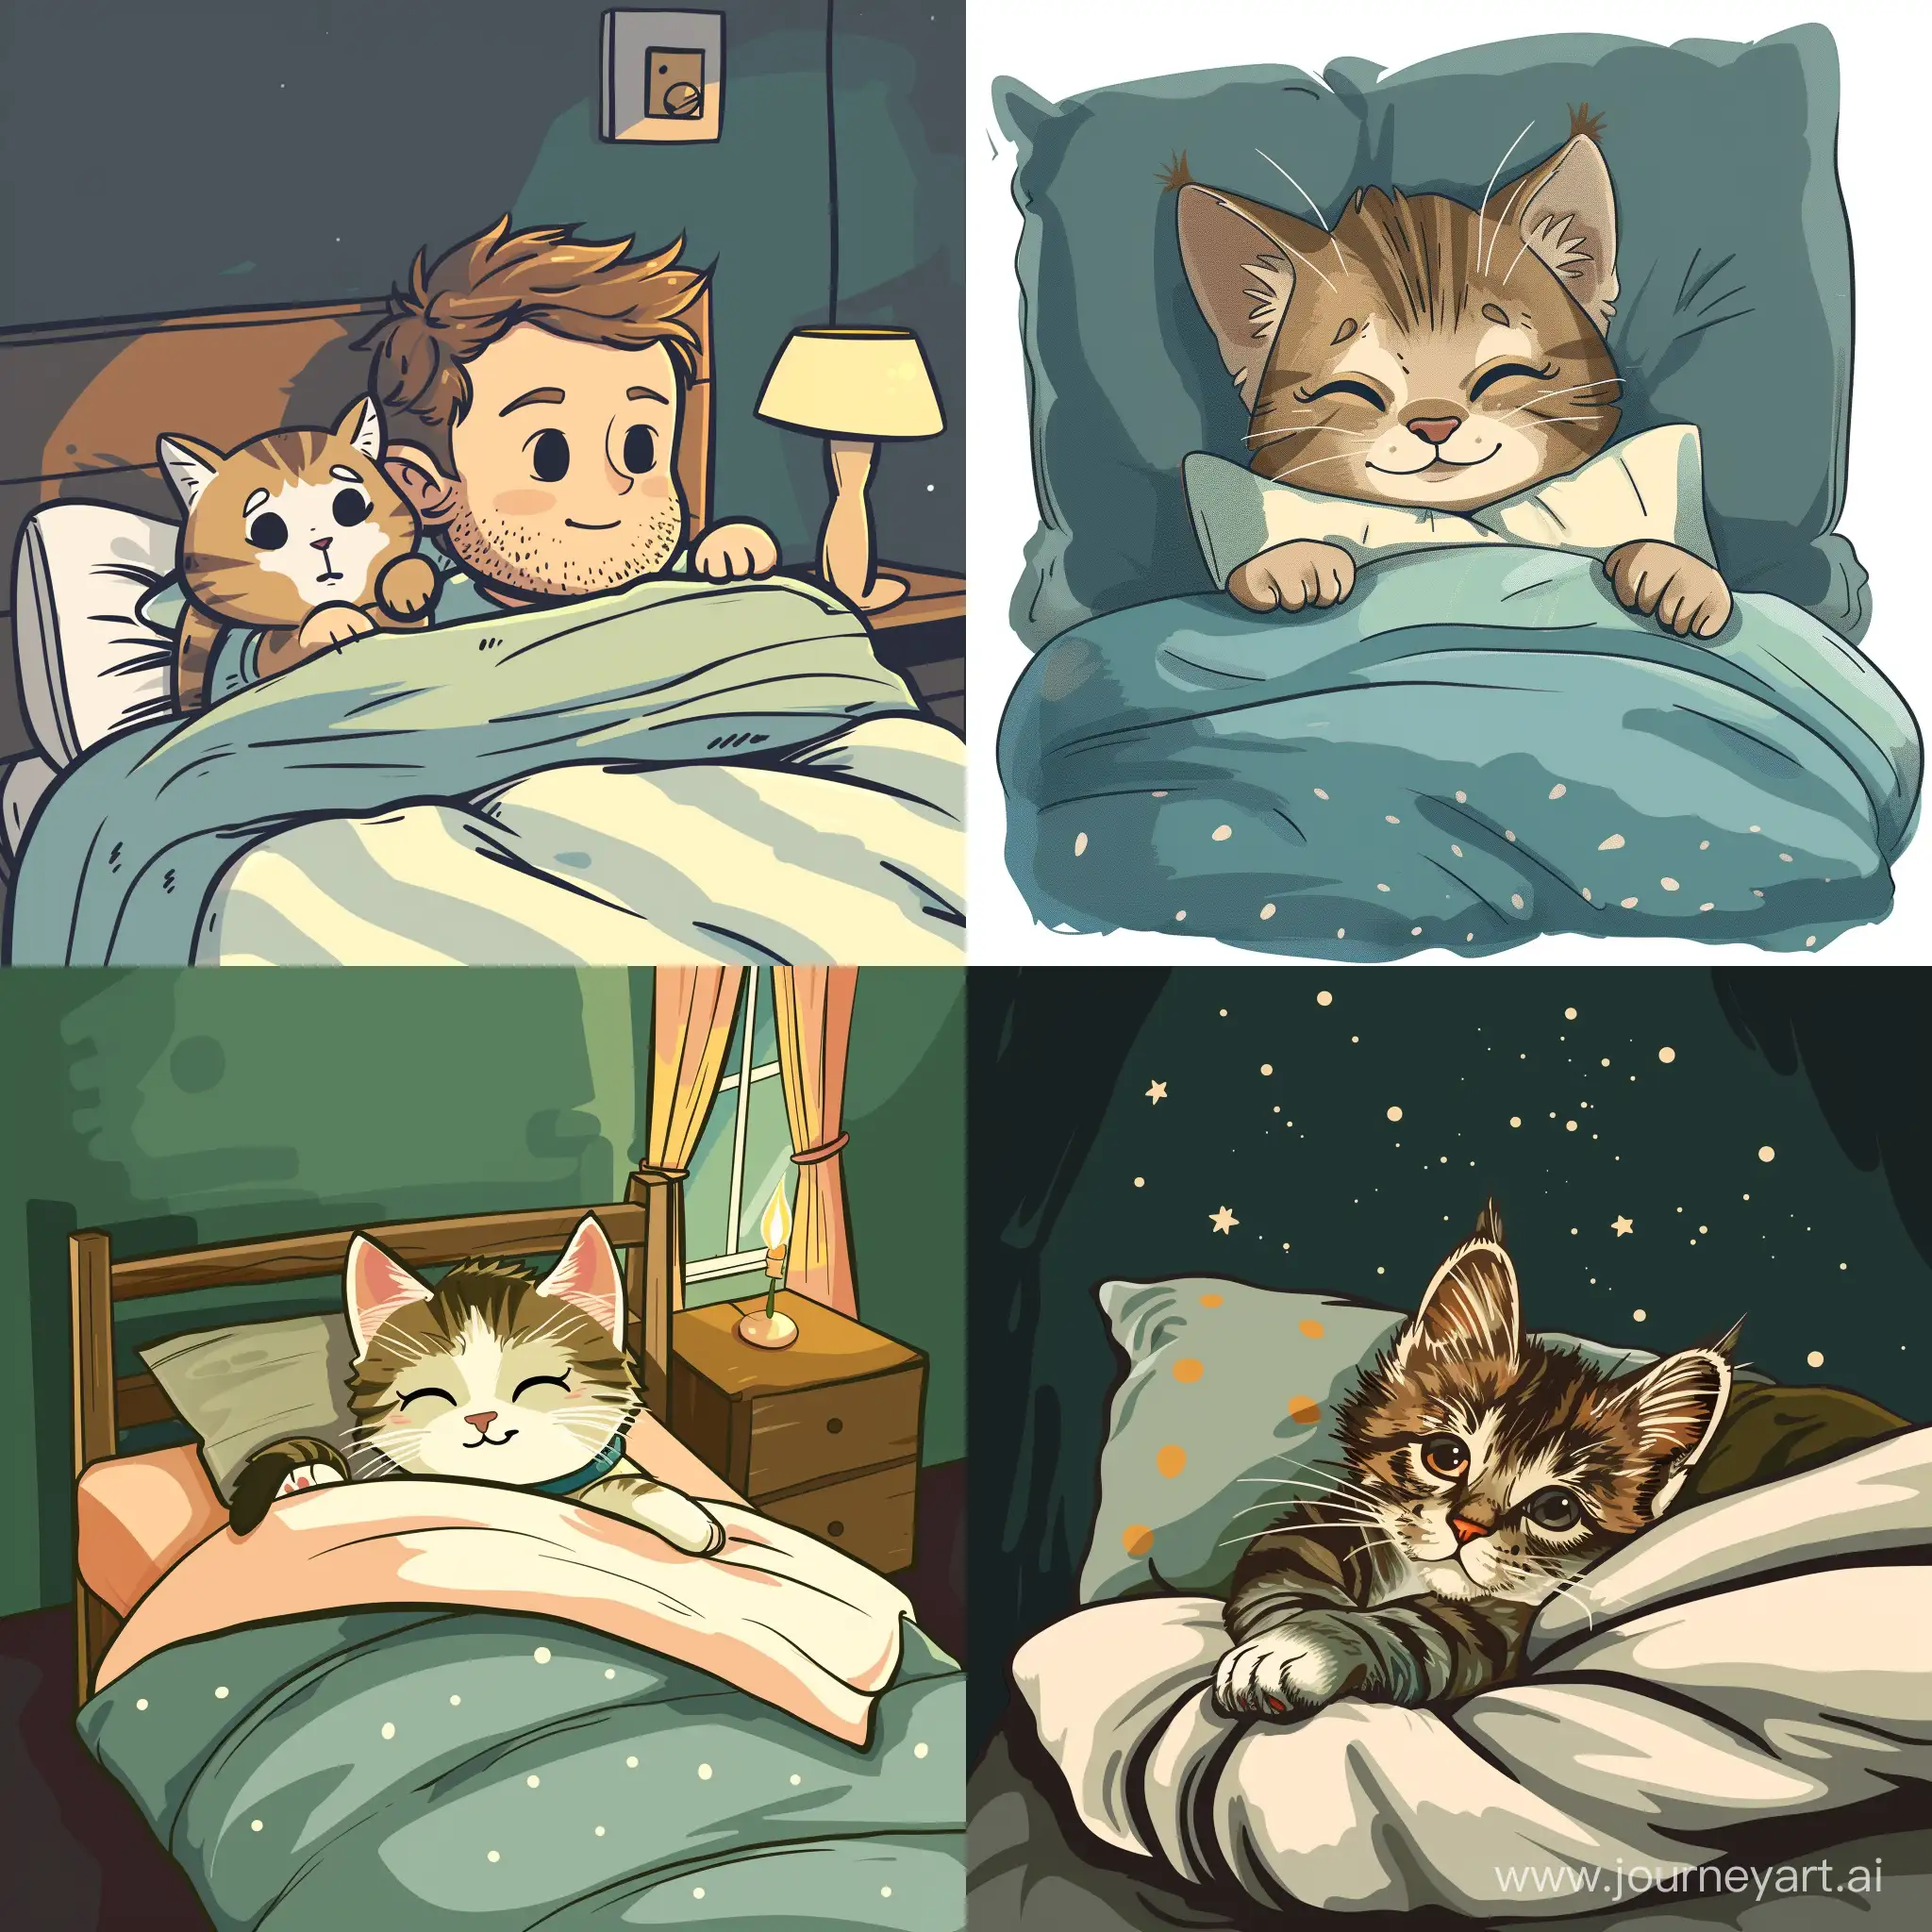 Пожелание любимому мужу спокойно ночи. Муж в образе котёнка. Укладывается спать в уютную кровать. В стиле мультика